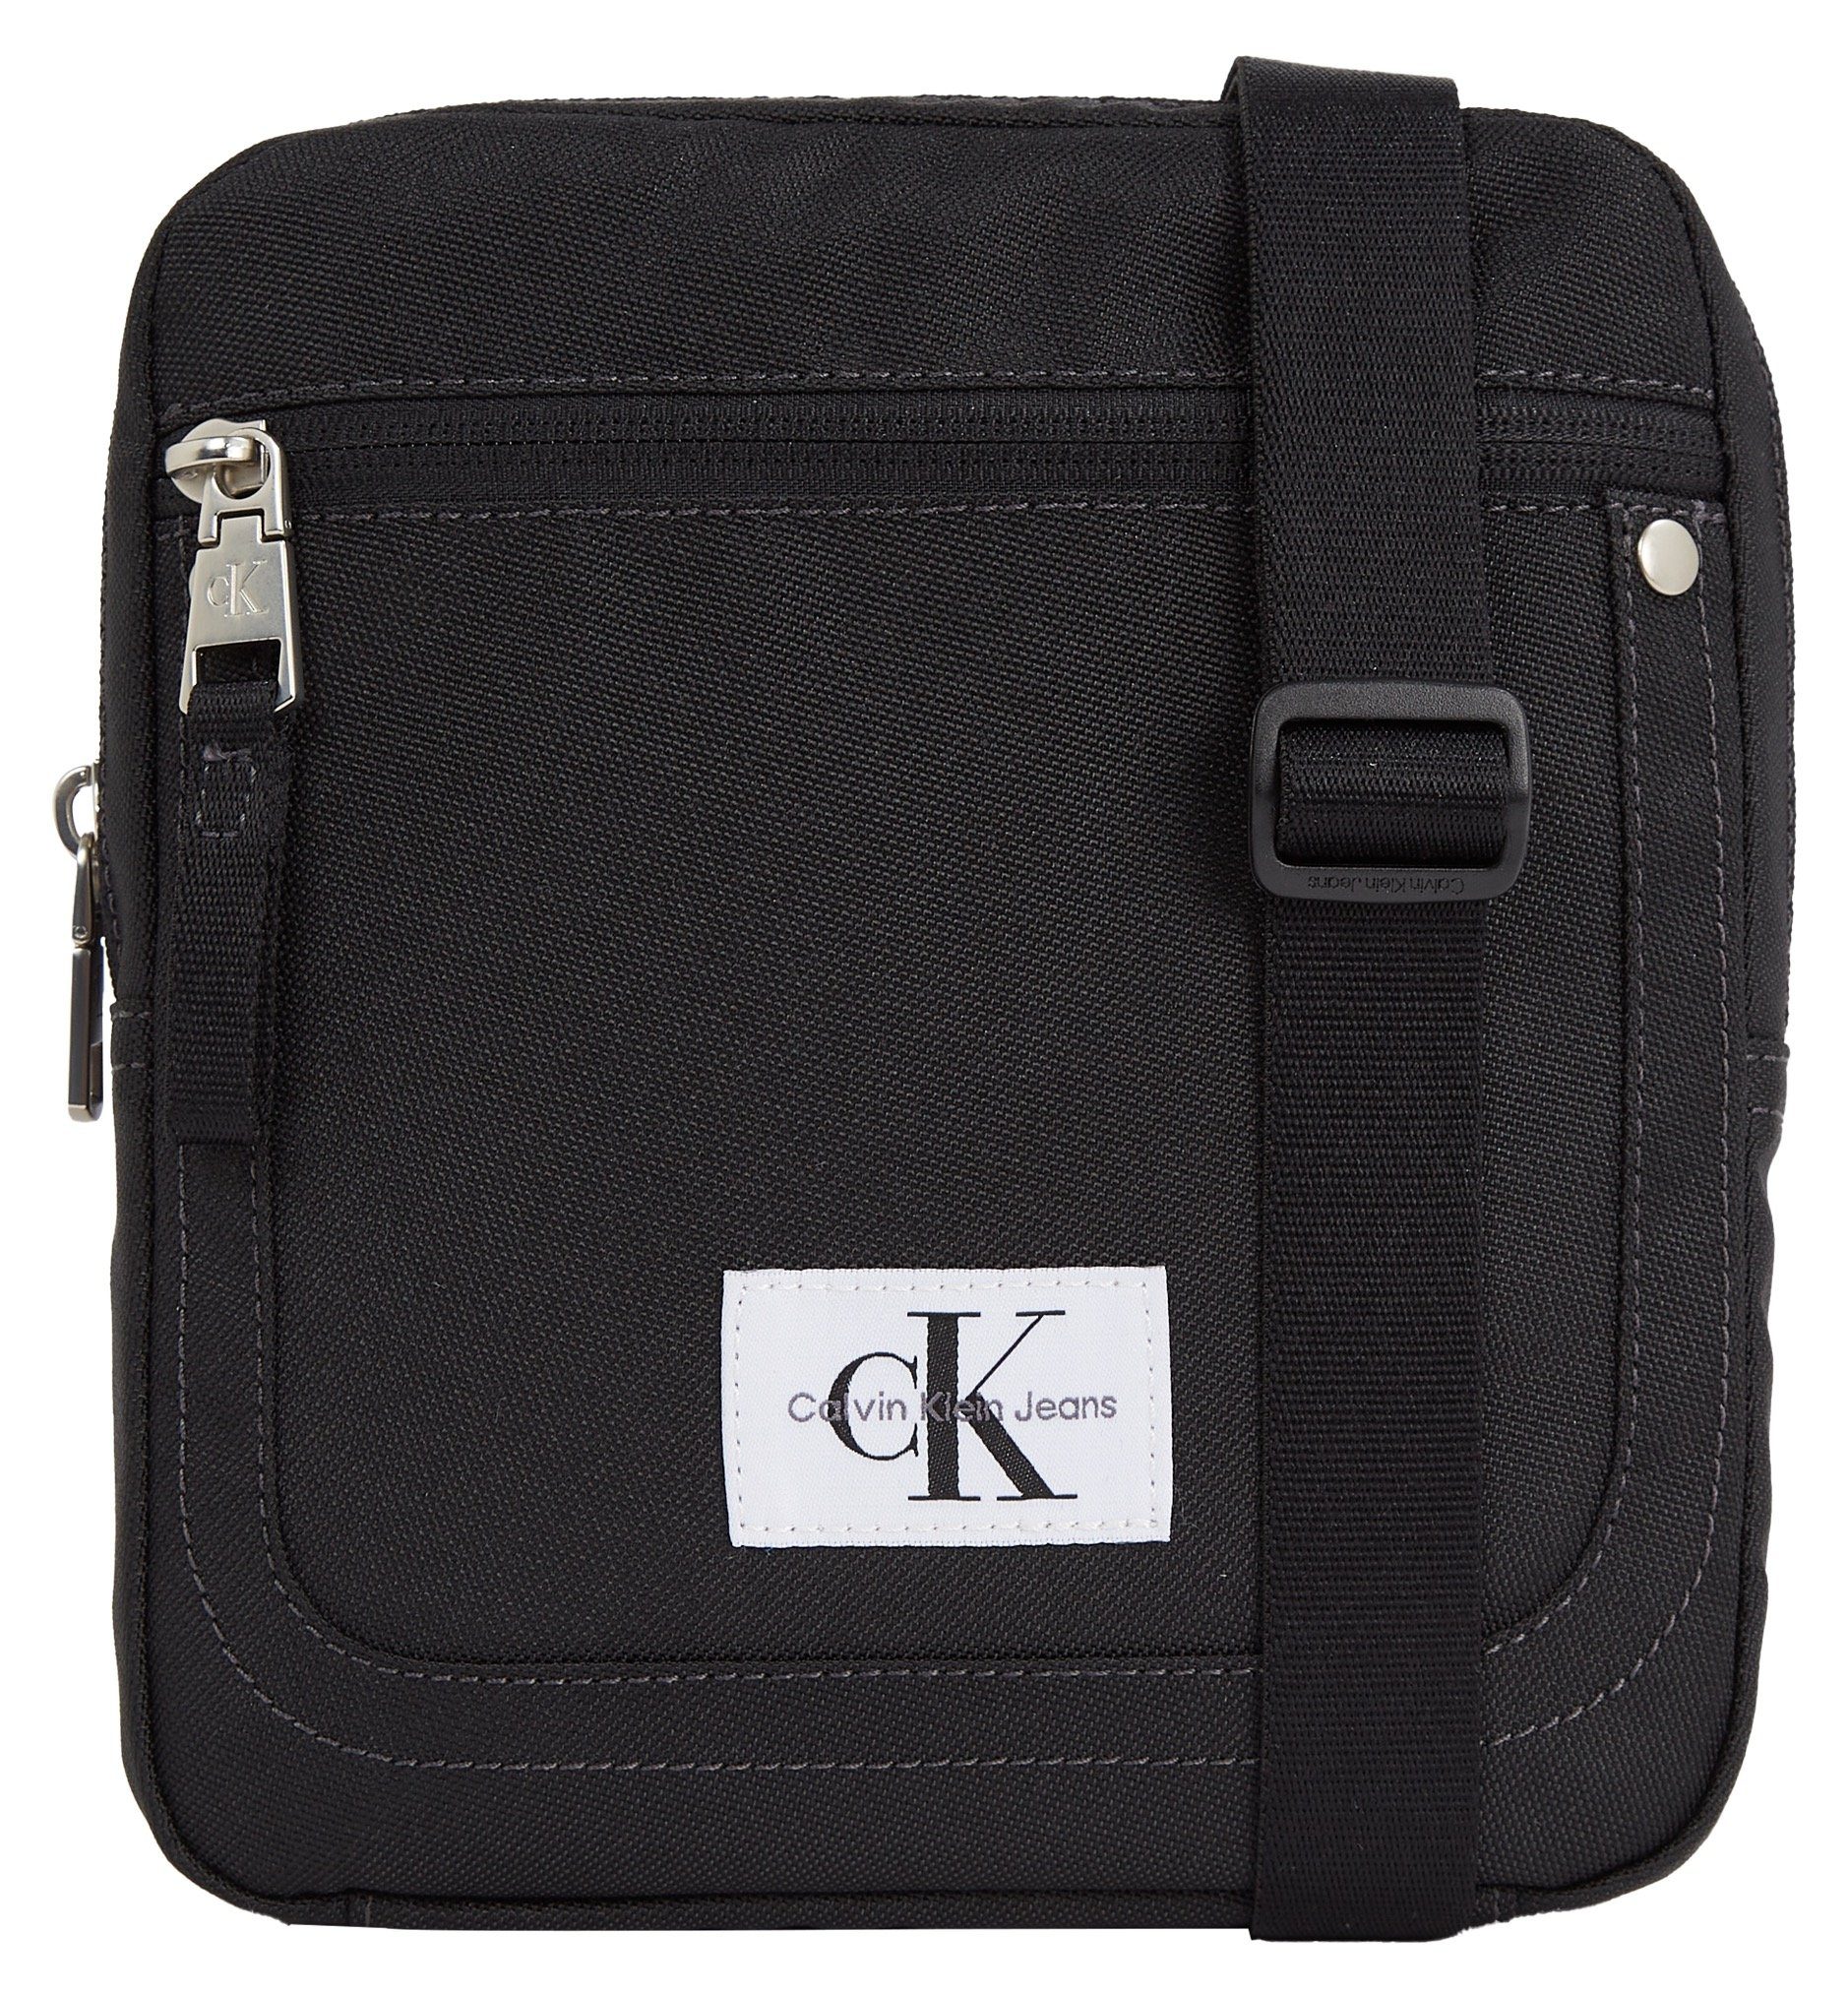 Calvin Klein Jeans Mini Bag SPORT ESSENTIALS REPORTER18 W, in schlichtem Design schwarz